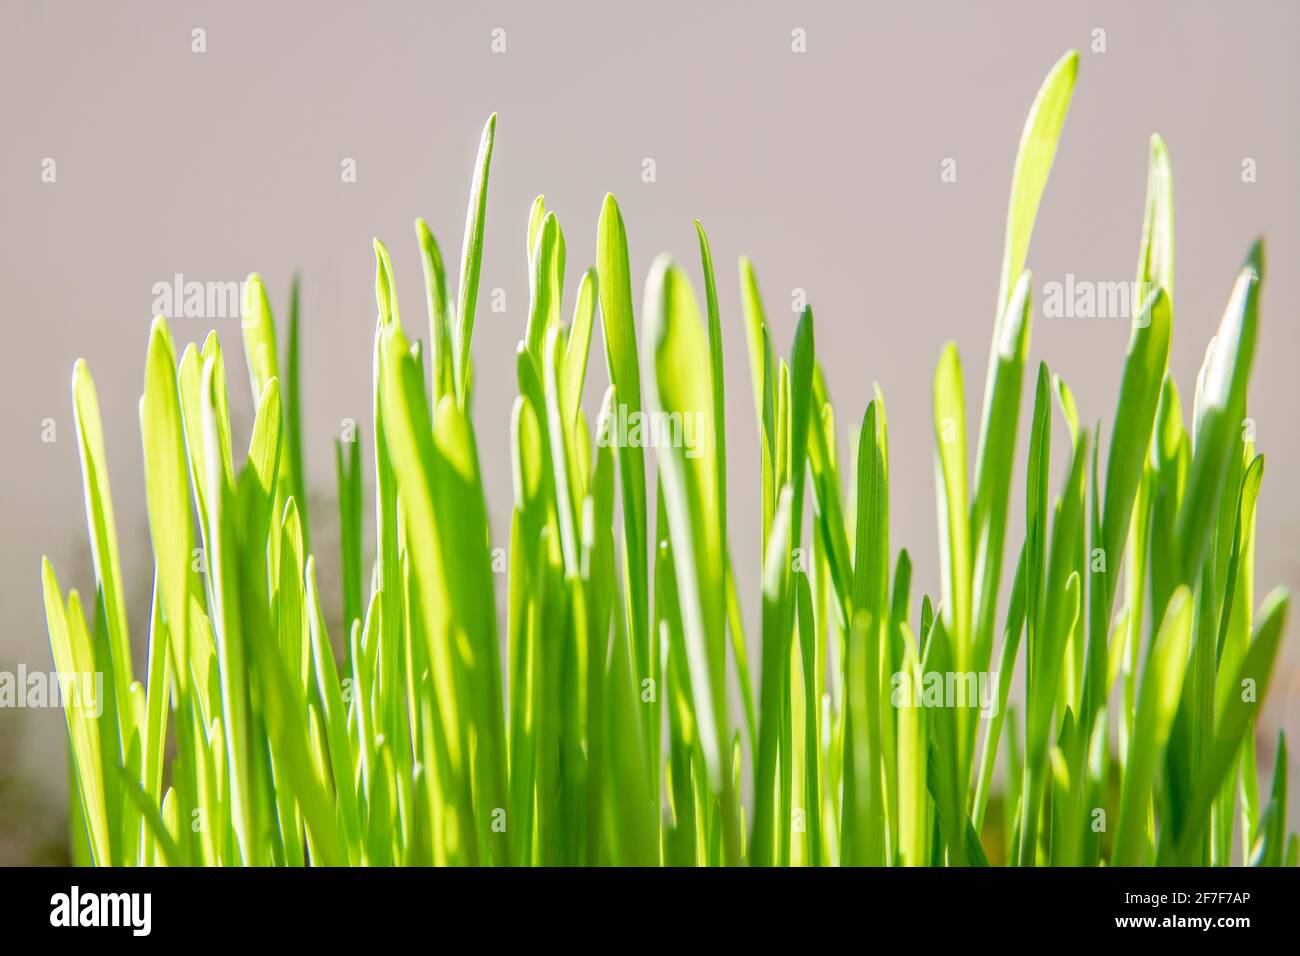 Concept de printemps et de croissance : gros plan sur l'herbe verte luxuriante, utilisée comme nourriture pour chats. Décoration de Pâques. Croissance de l'économie. Lumière du jour. Arrière-plan naturel Banque D'Images